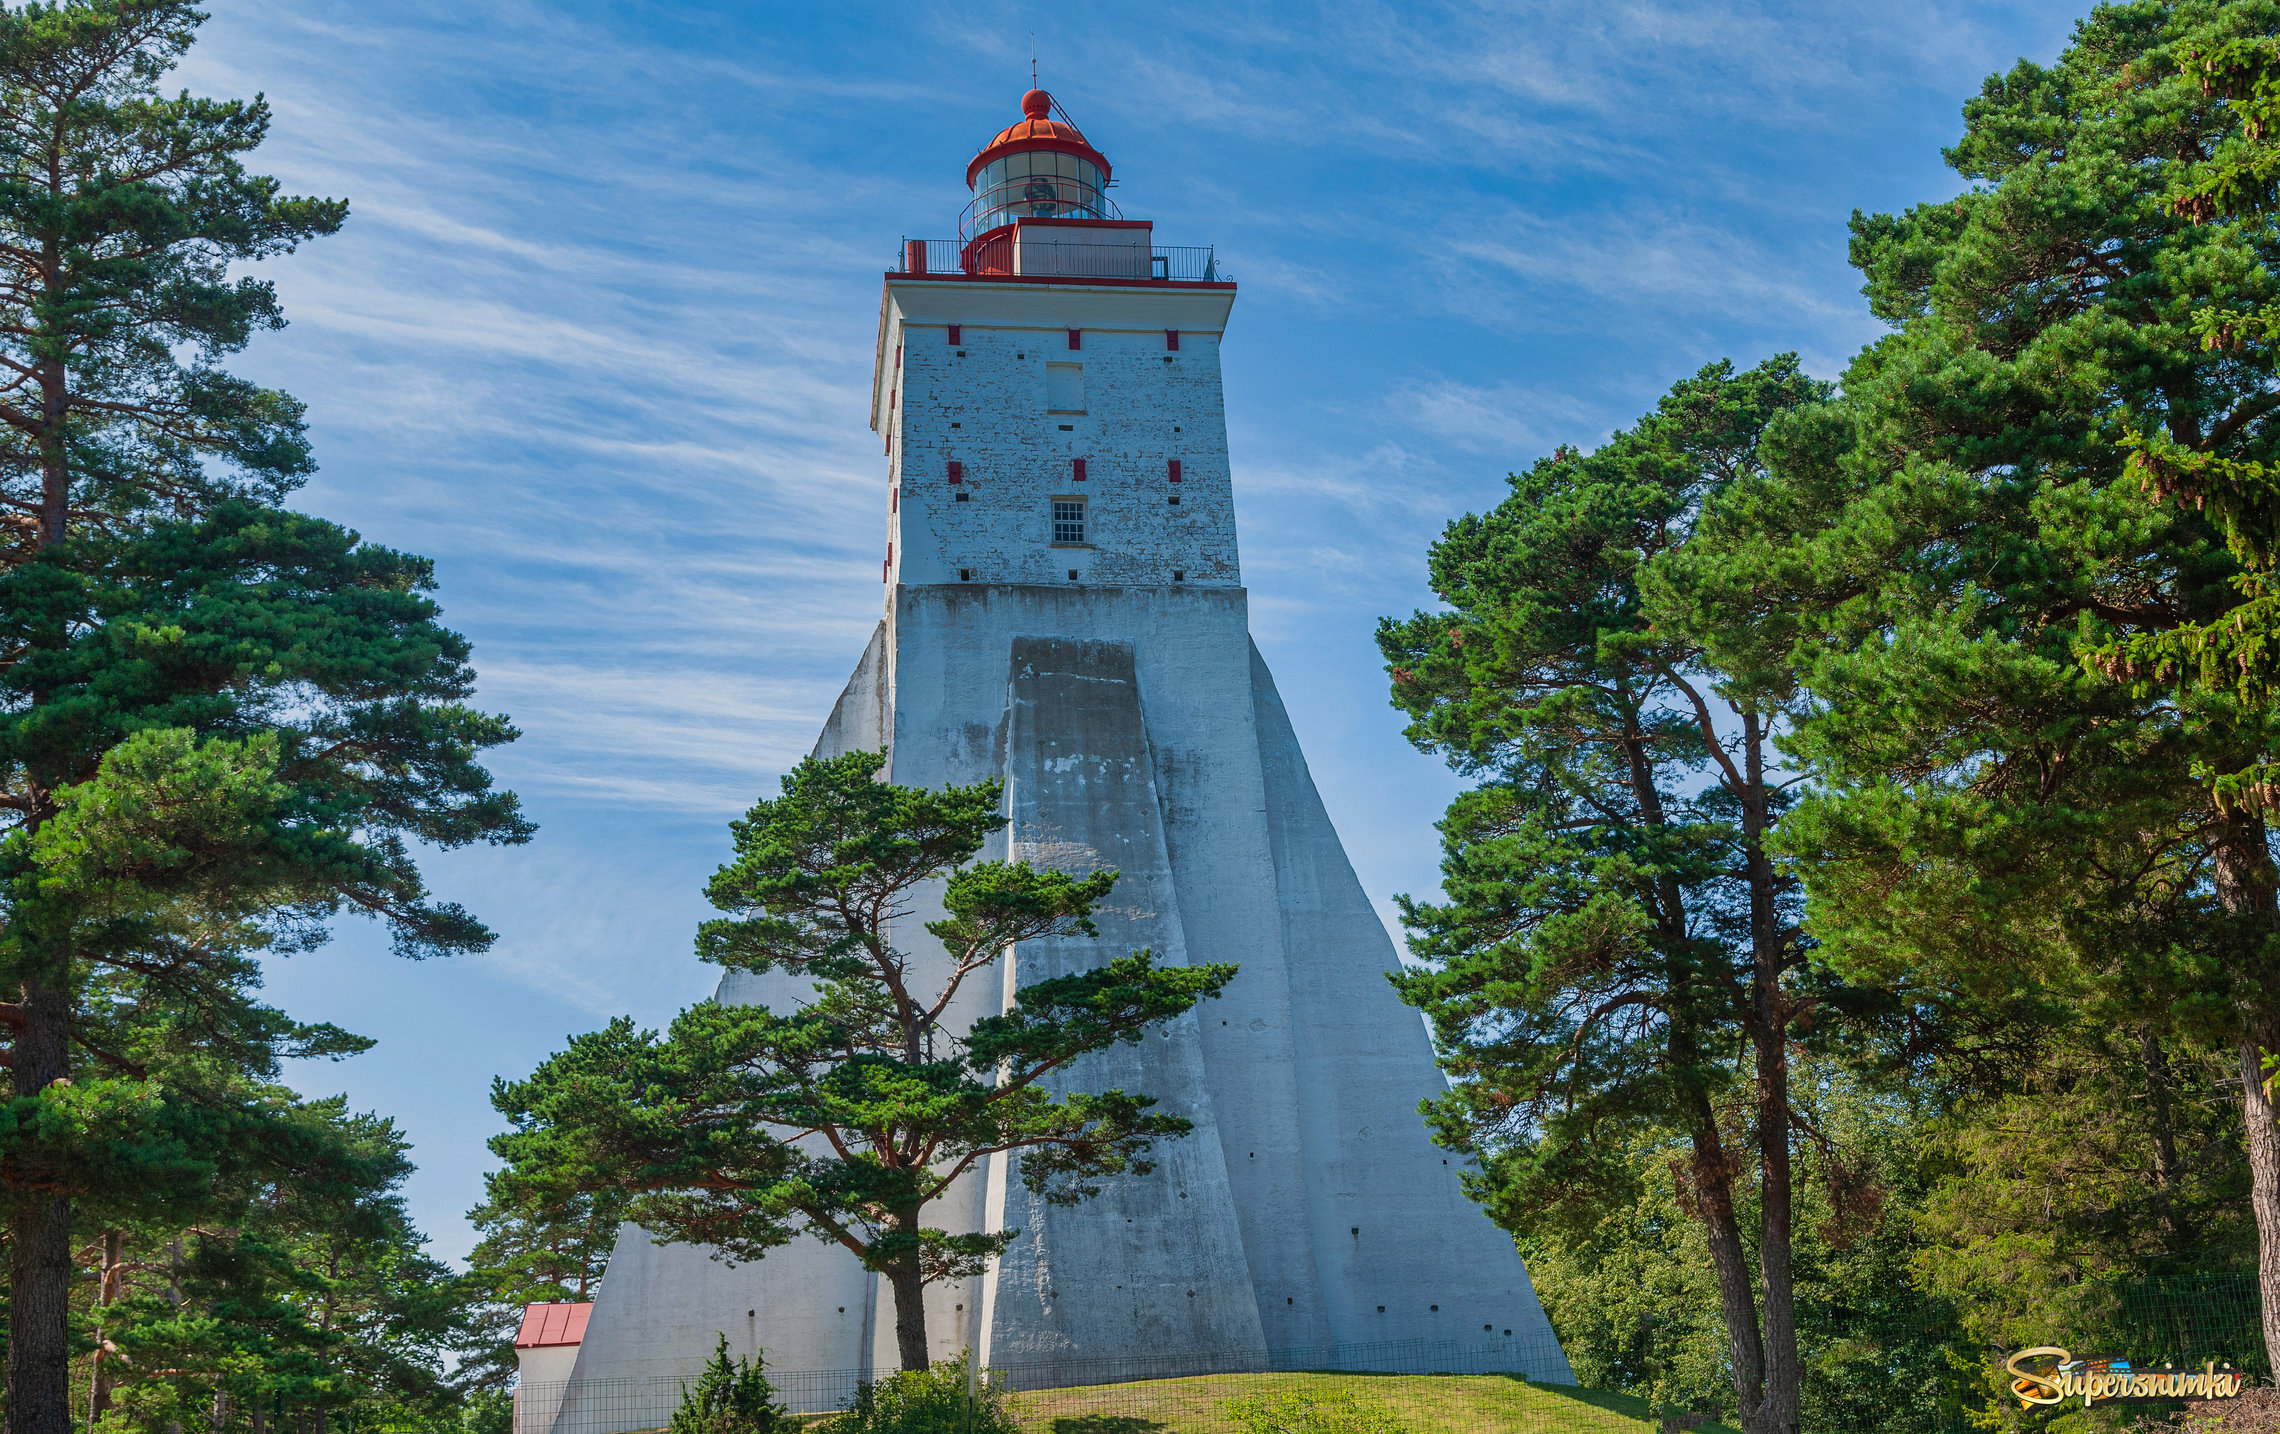 Маяк Кыпу — маяк на острове Хийумаа в Эстонии. Старейший маяк в странах Балтии и один из старейших в мире. Общая высота от уровня моря до вершины маяка — 102 метра.